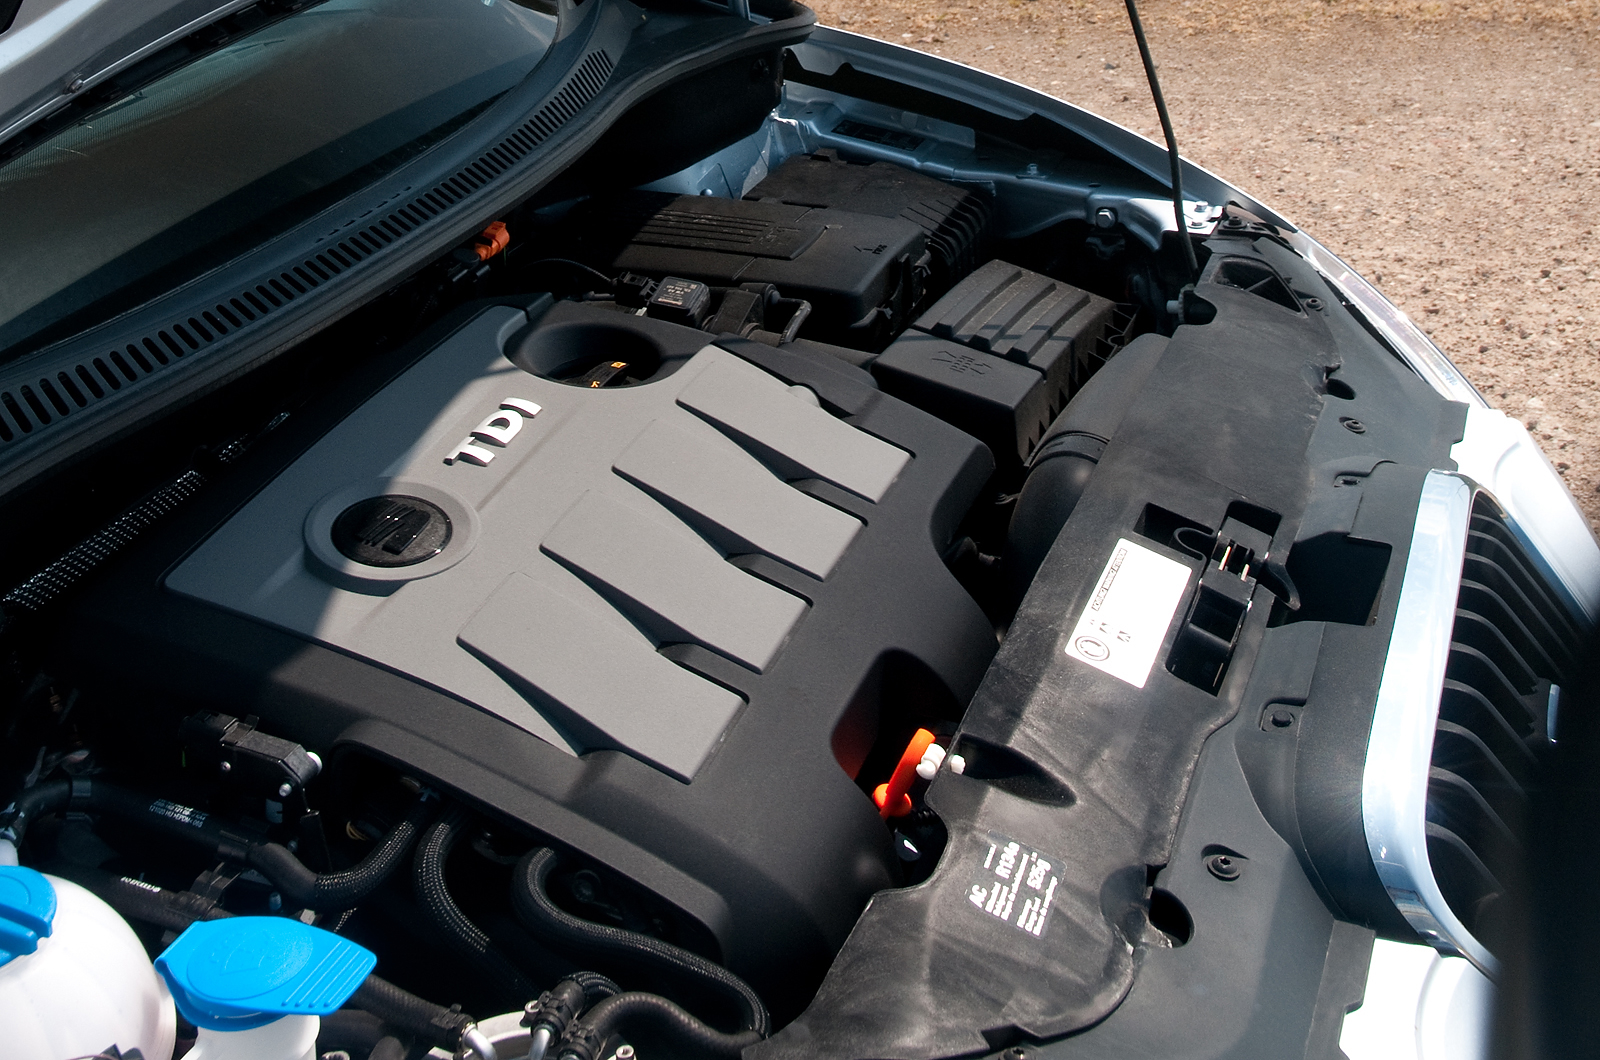 2.0-litre Seat Altea diesel engine